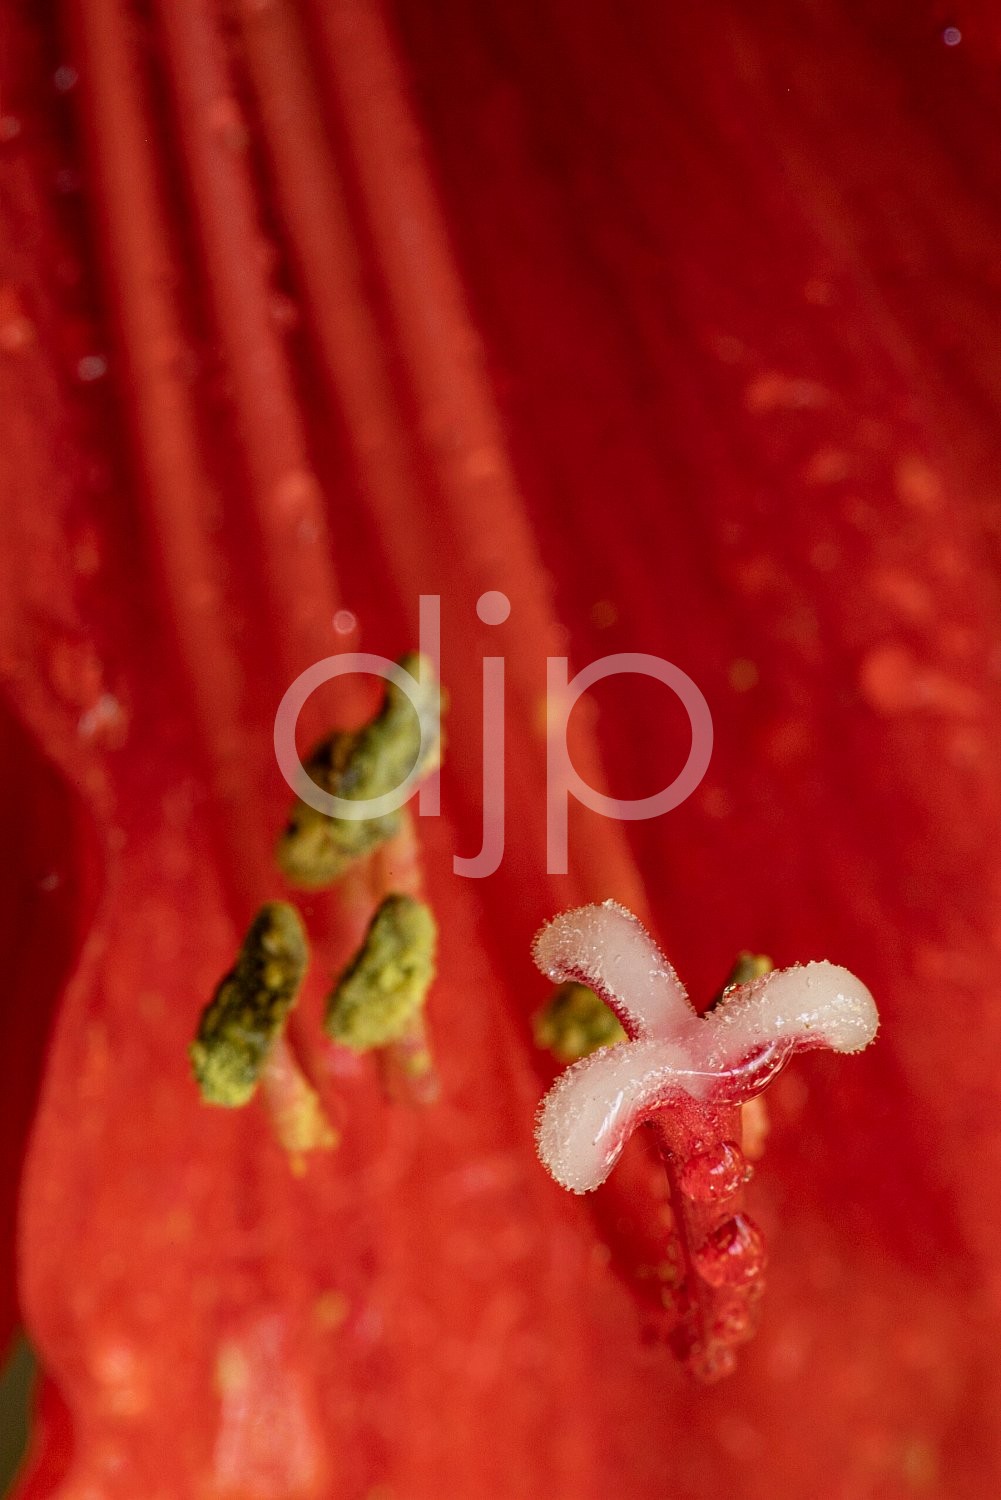 D Jones Photography, djonesphoto, flowers, macro, orchids, personal